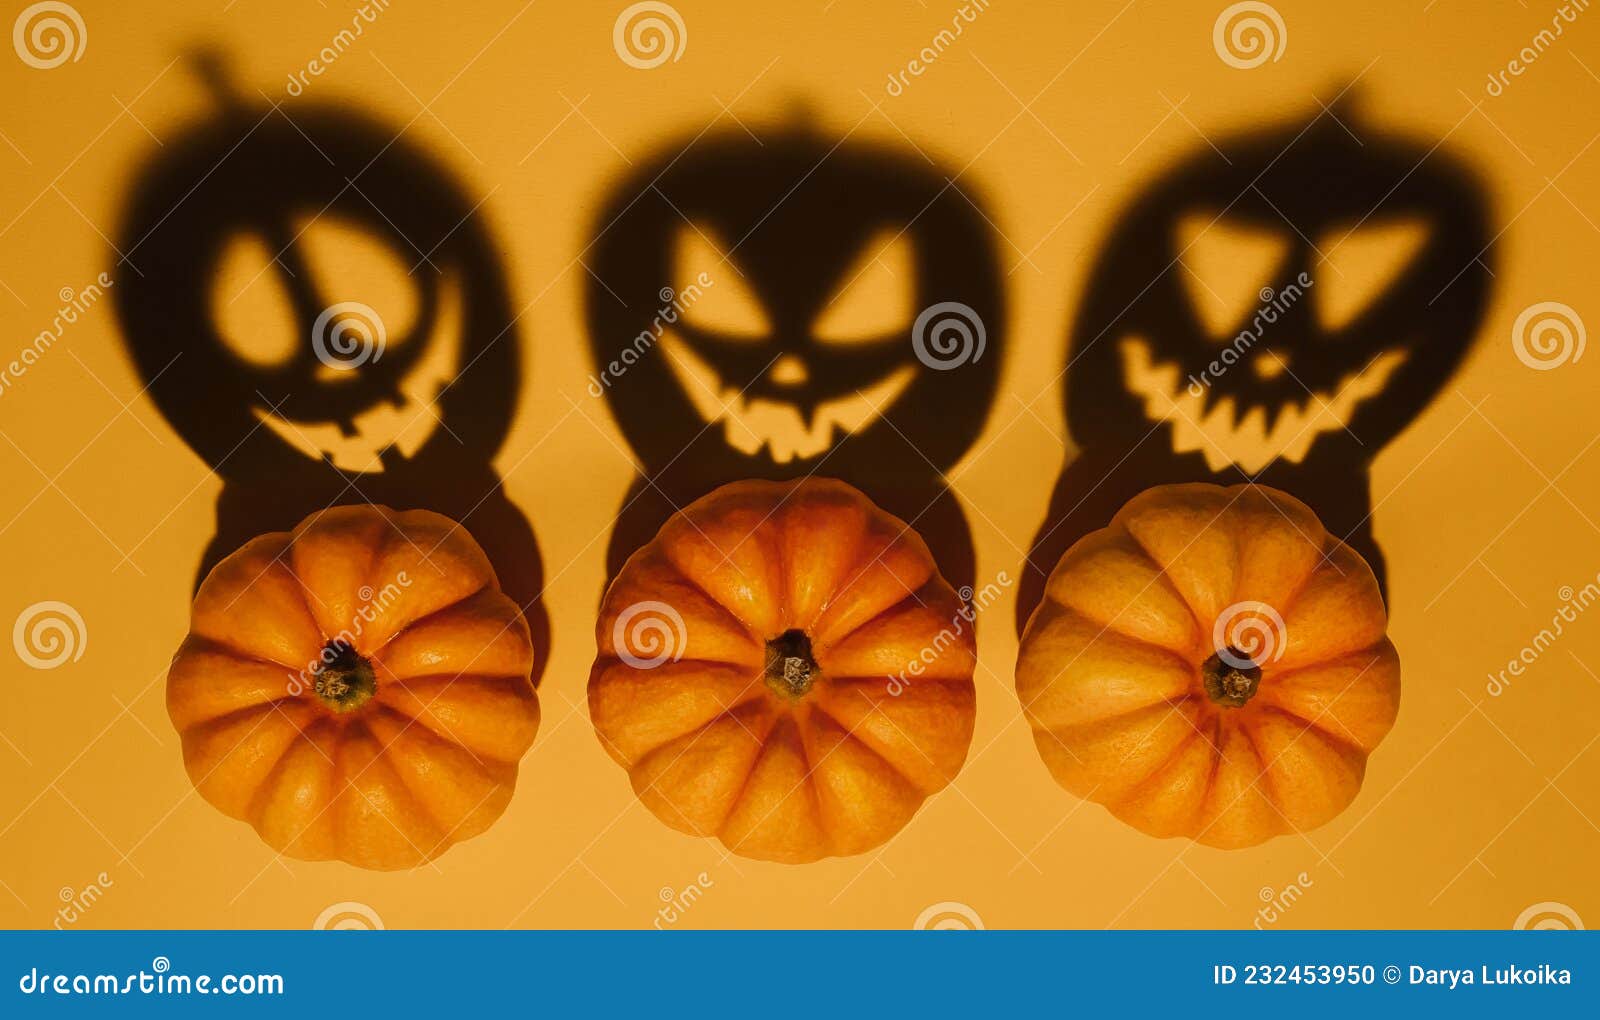 cara assustadora em um fundo laranja para o halloween. lanterna